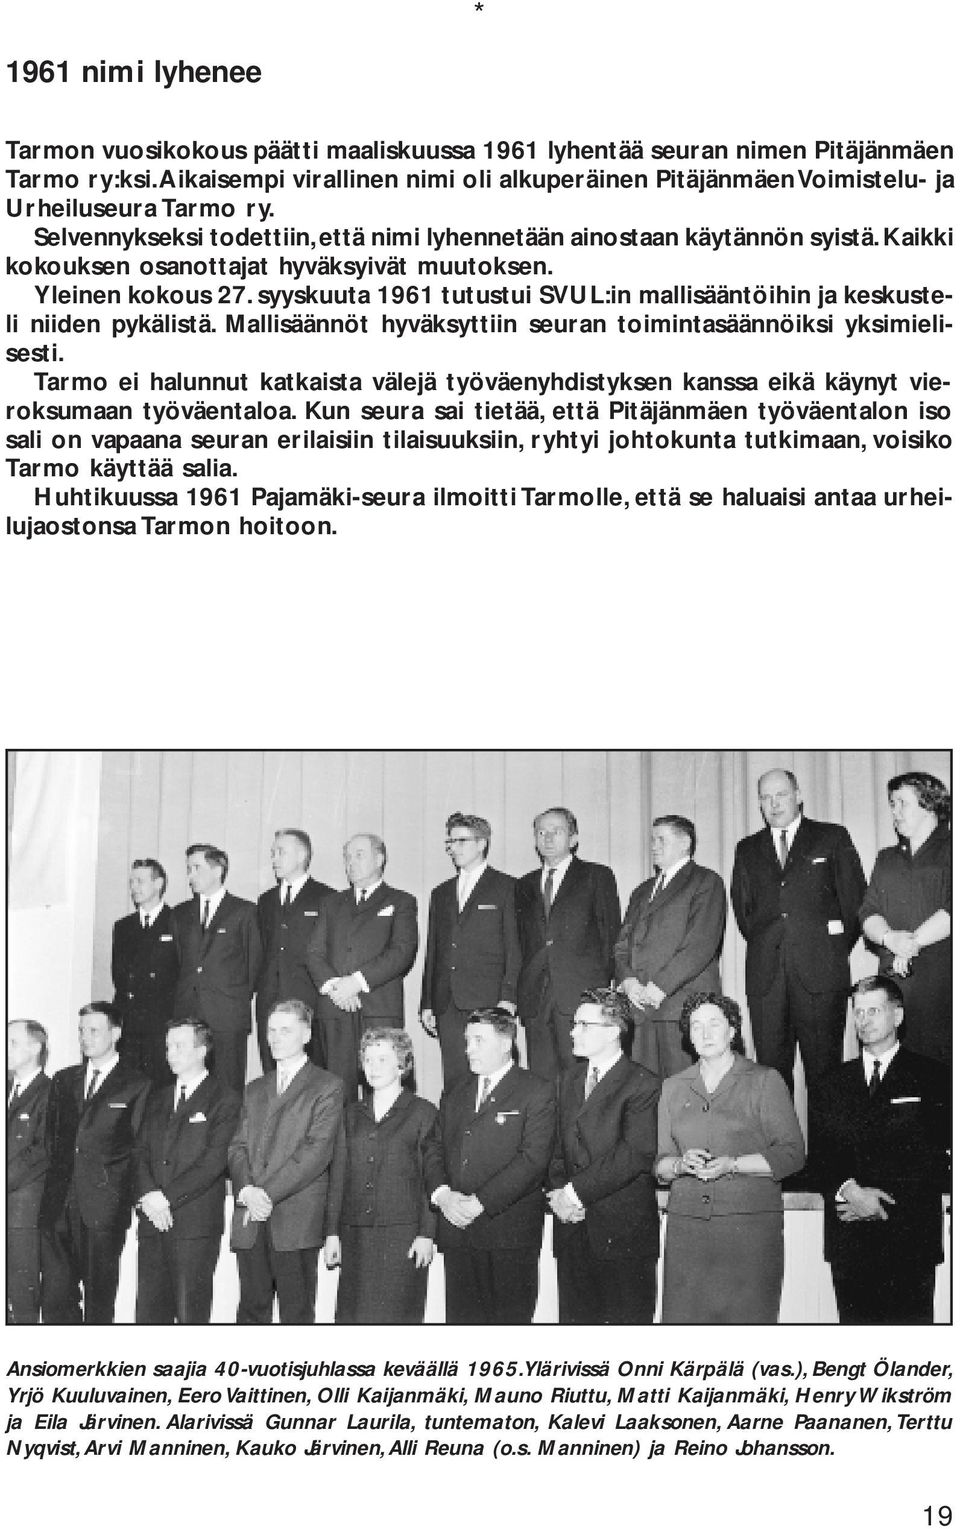 Kaikki kokouksen osanottajat hyväksyivät muutoksen. Yleinen kokous 27. syyskuuta 1961 tutustui SVUL:in mallisääntöihin ja keskusteli niiden pykälistä.